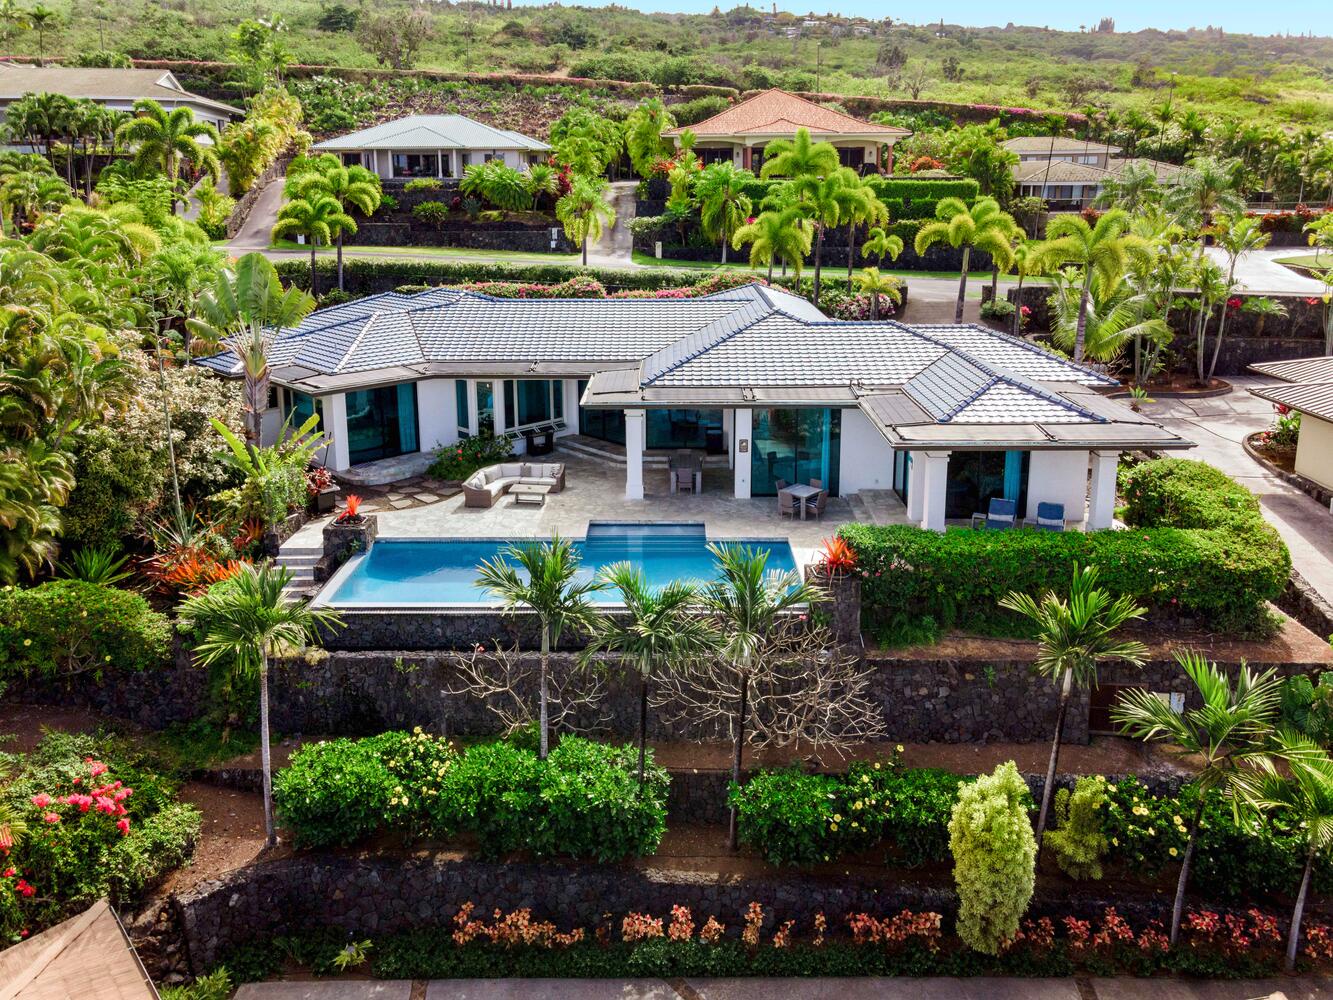 Kailua Kona Vacation Rentals, Blue Hawaii - Welcome home!